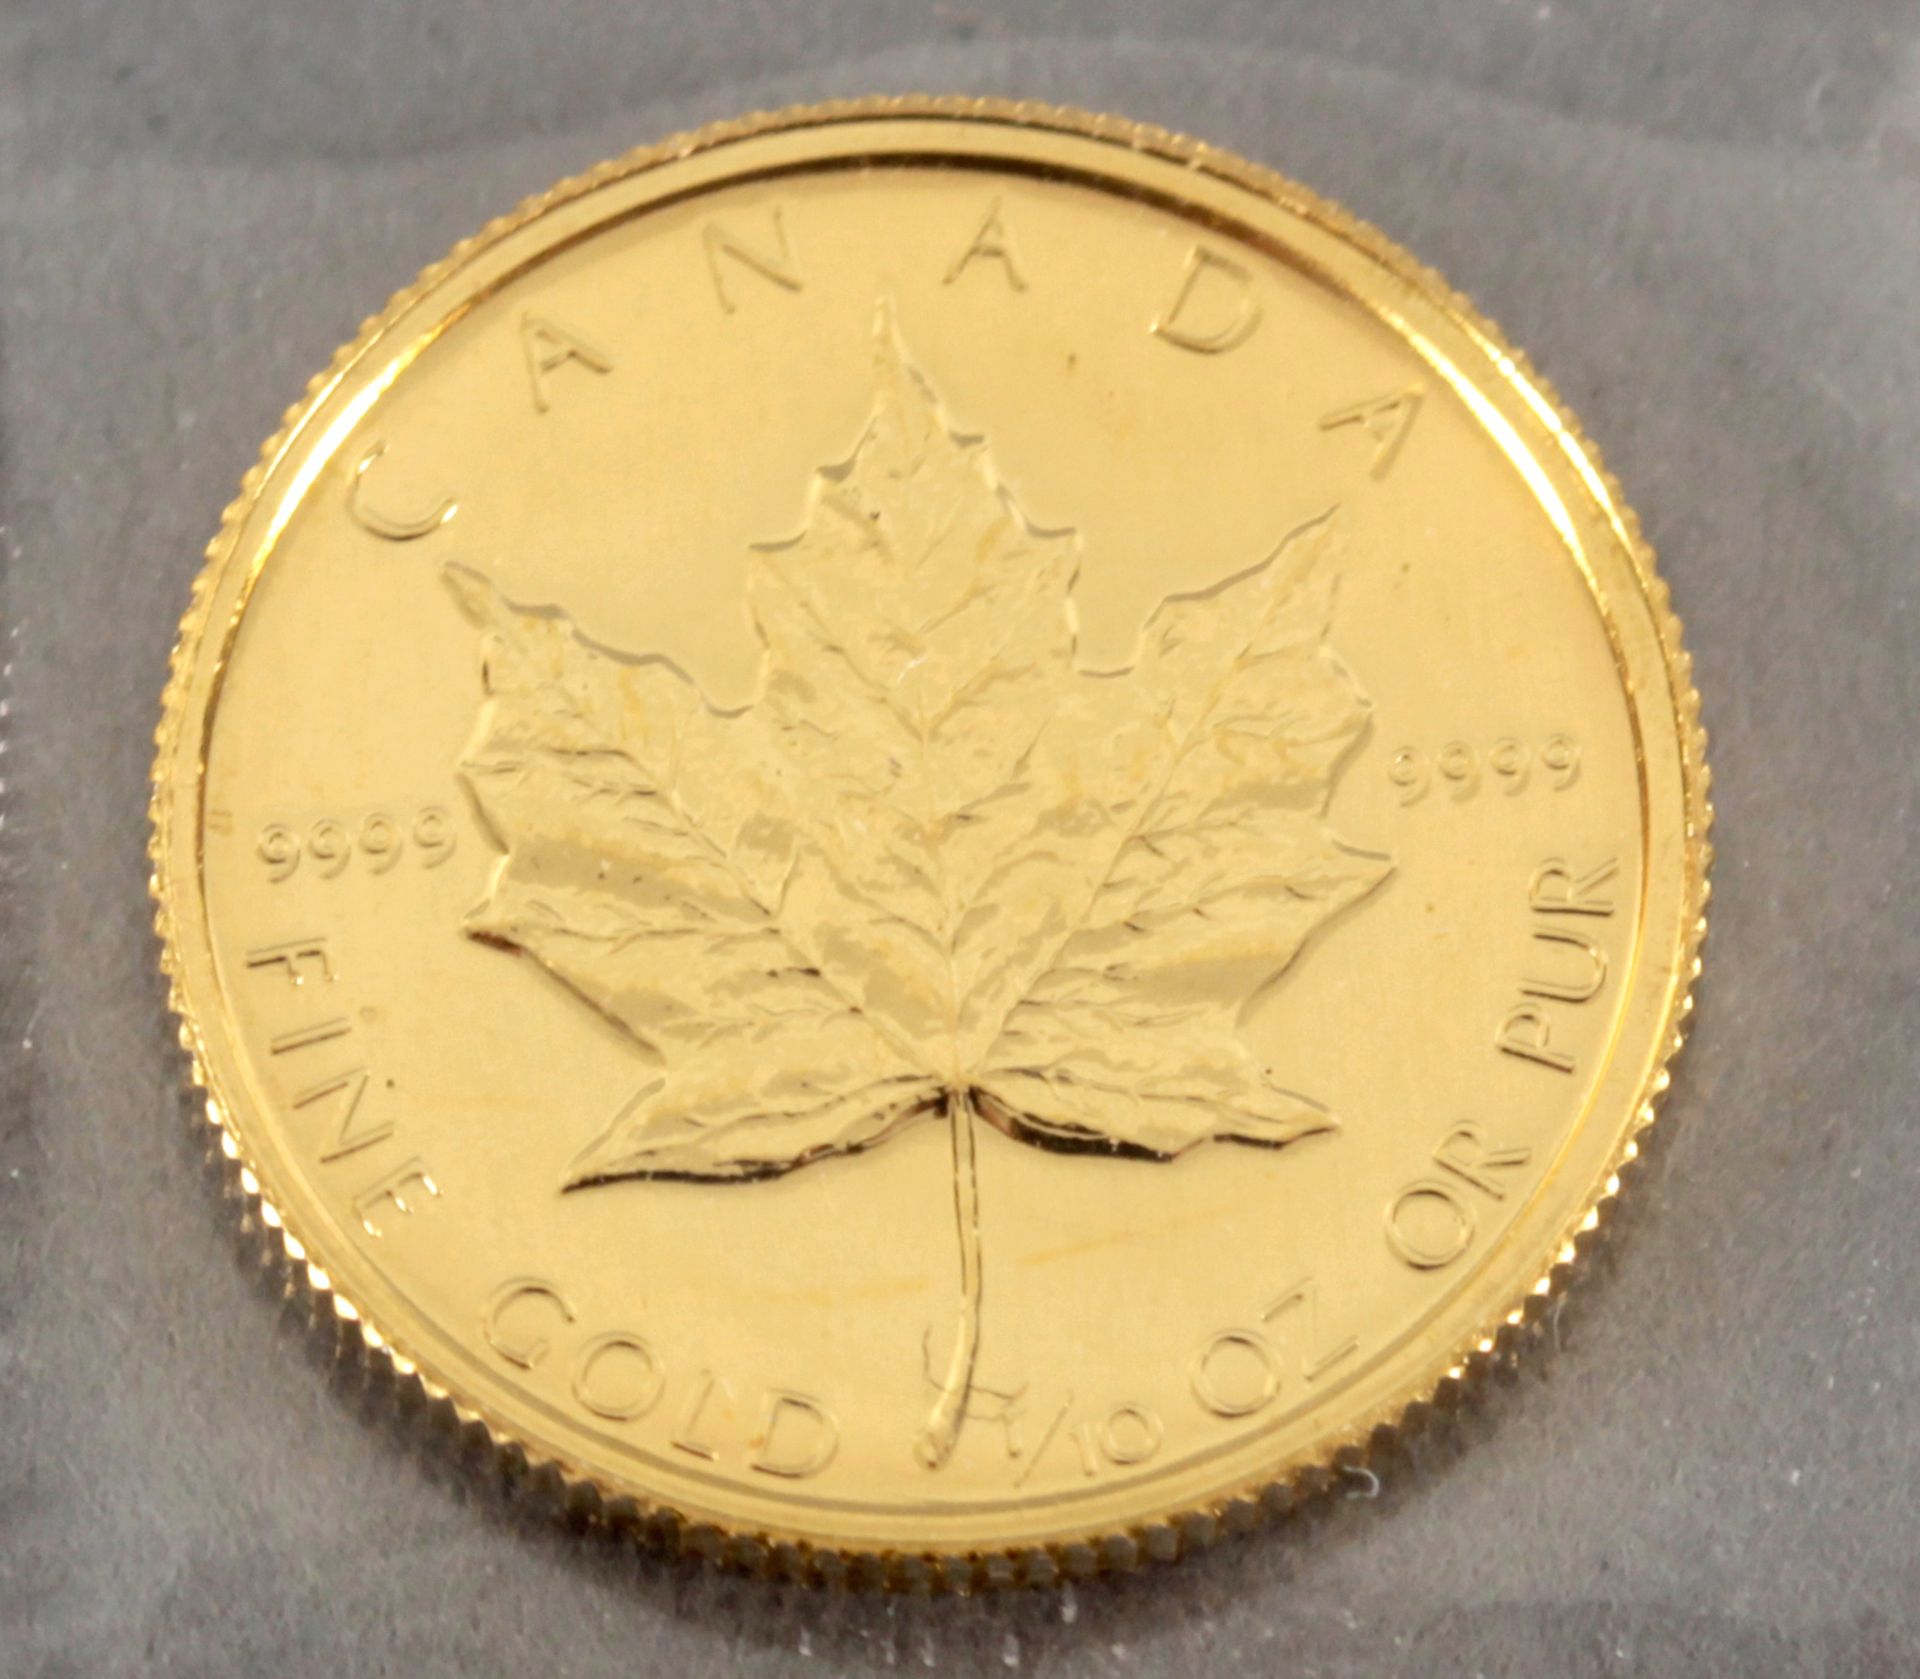 Goldmünze zu 5 Dollar 'Maple Leaf', Kanada 1989